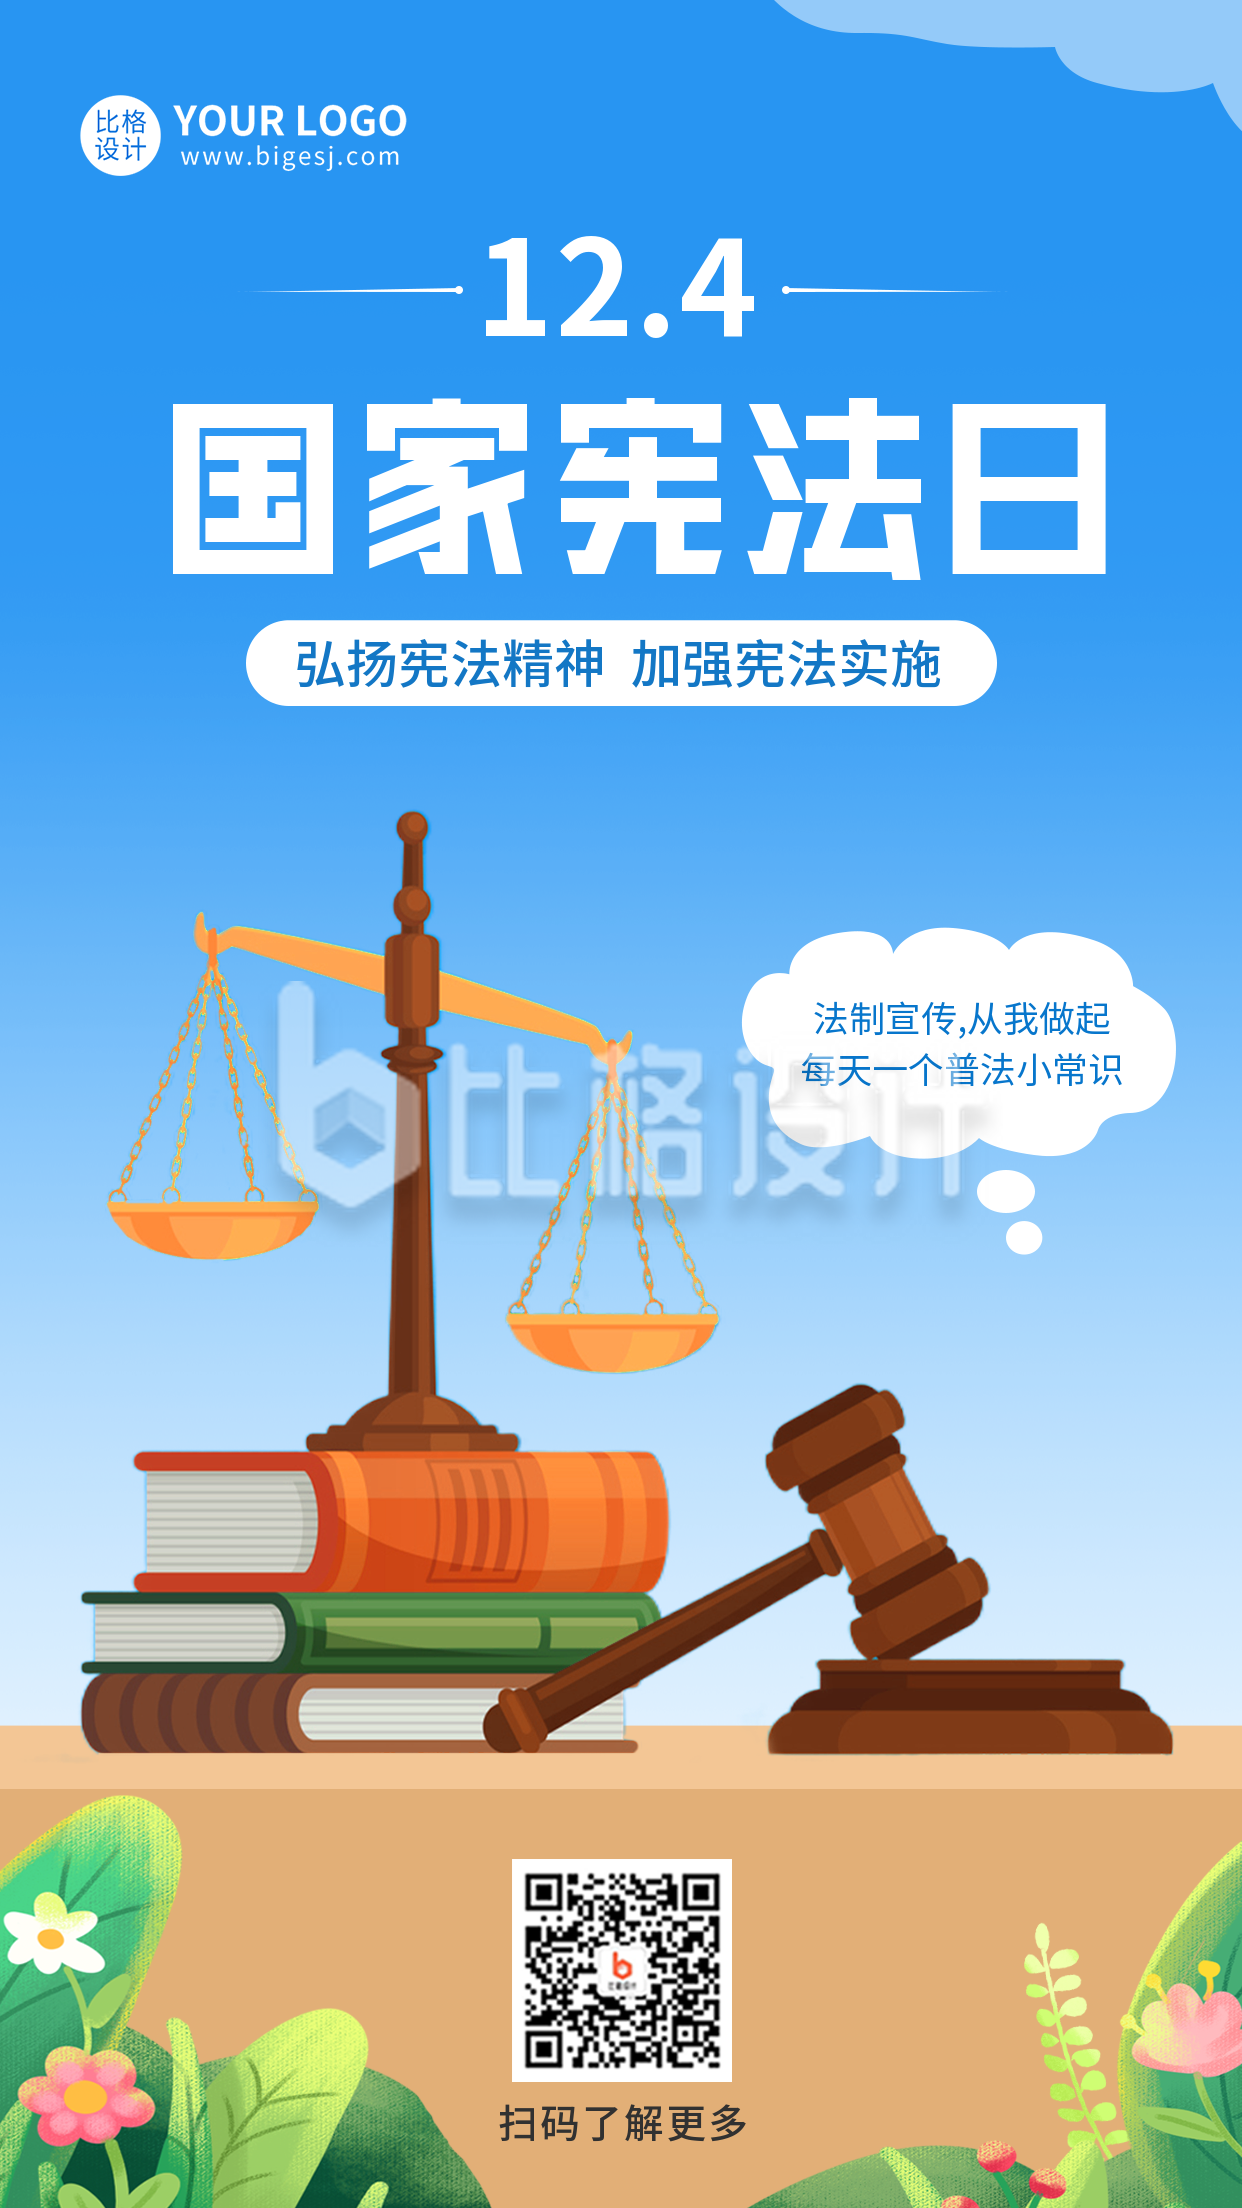 国家宪法日手机海报